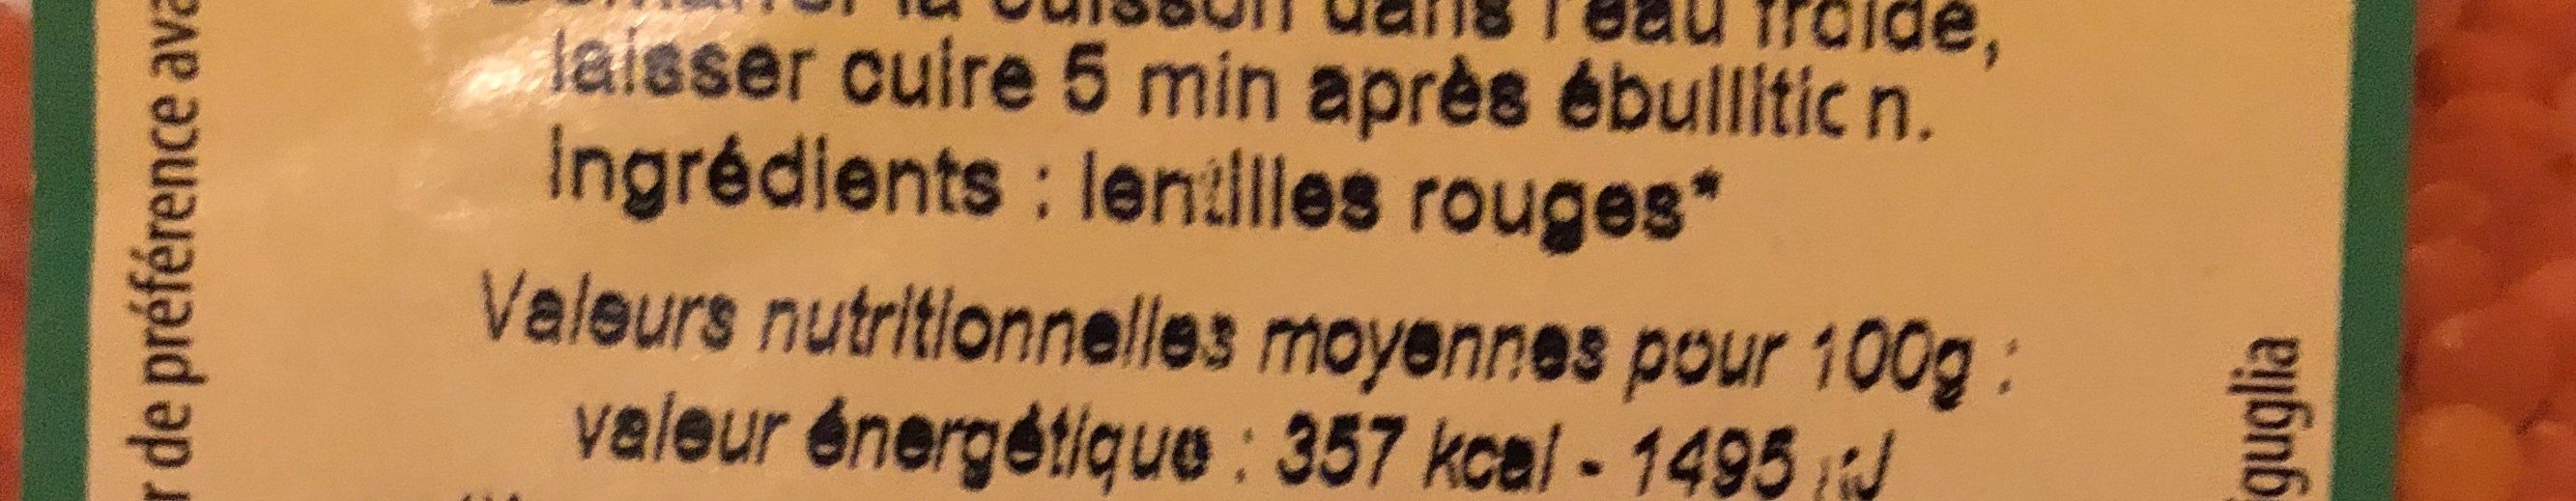 Lentilles rouges corail - Ingredients - fr